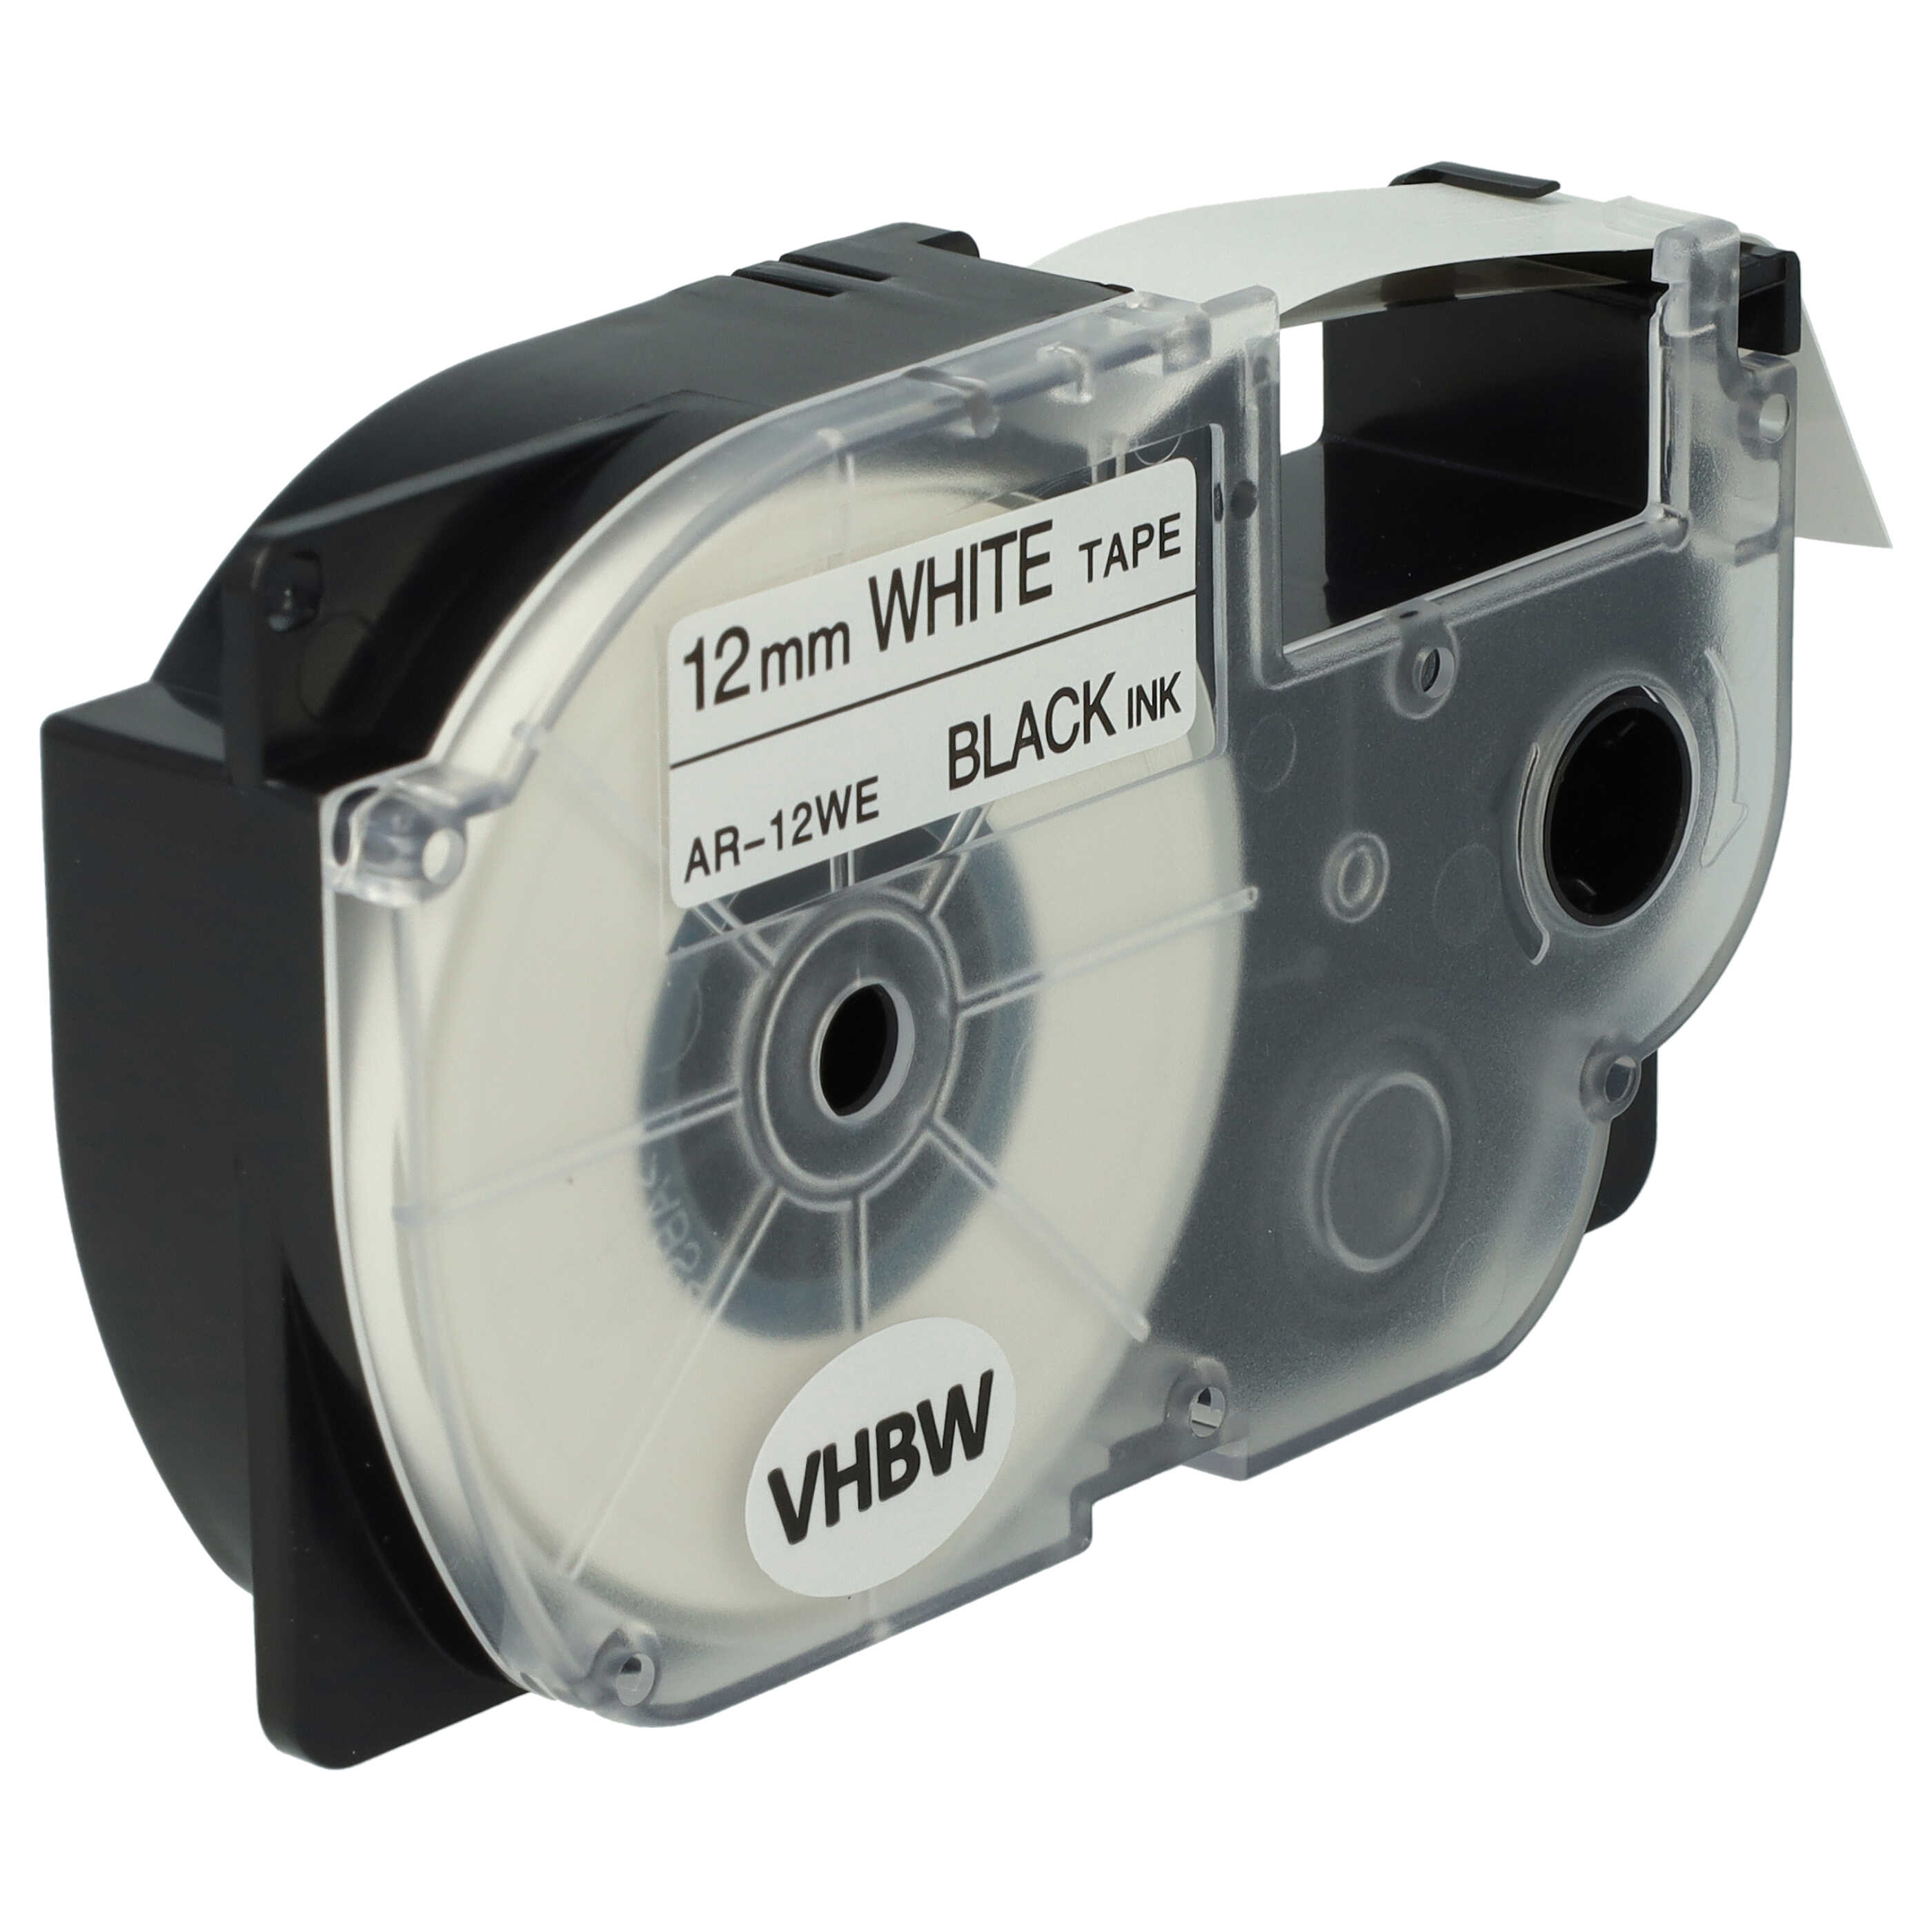 Cassette à ruban remplace Casio XR-12WE, XR-12WE1 - 12mm lettrage Noir ruban Blanc